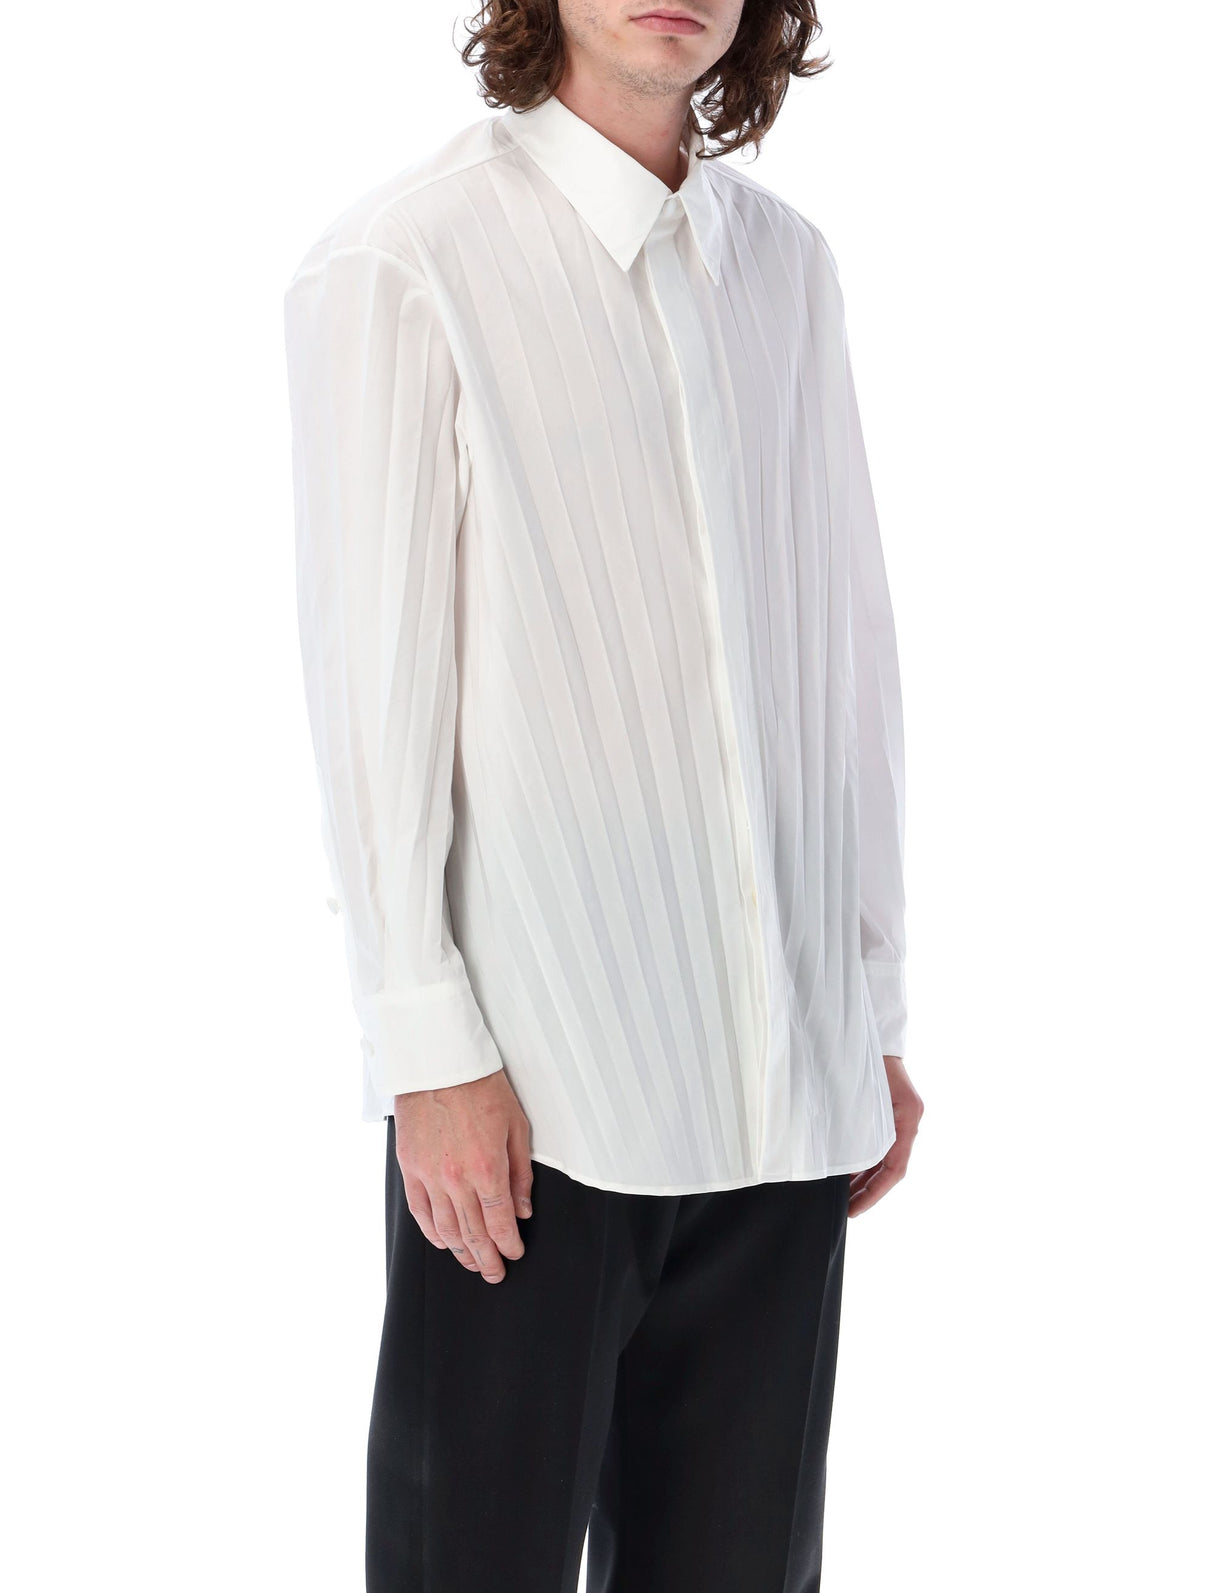 قميص قطني بشكل مقلّم للرجال باللون الأبيض لموسم ربيع وصيف 2023